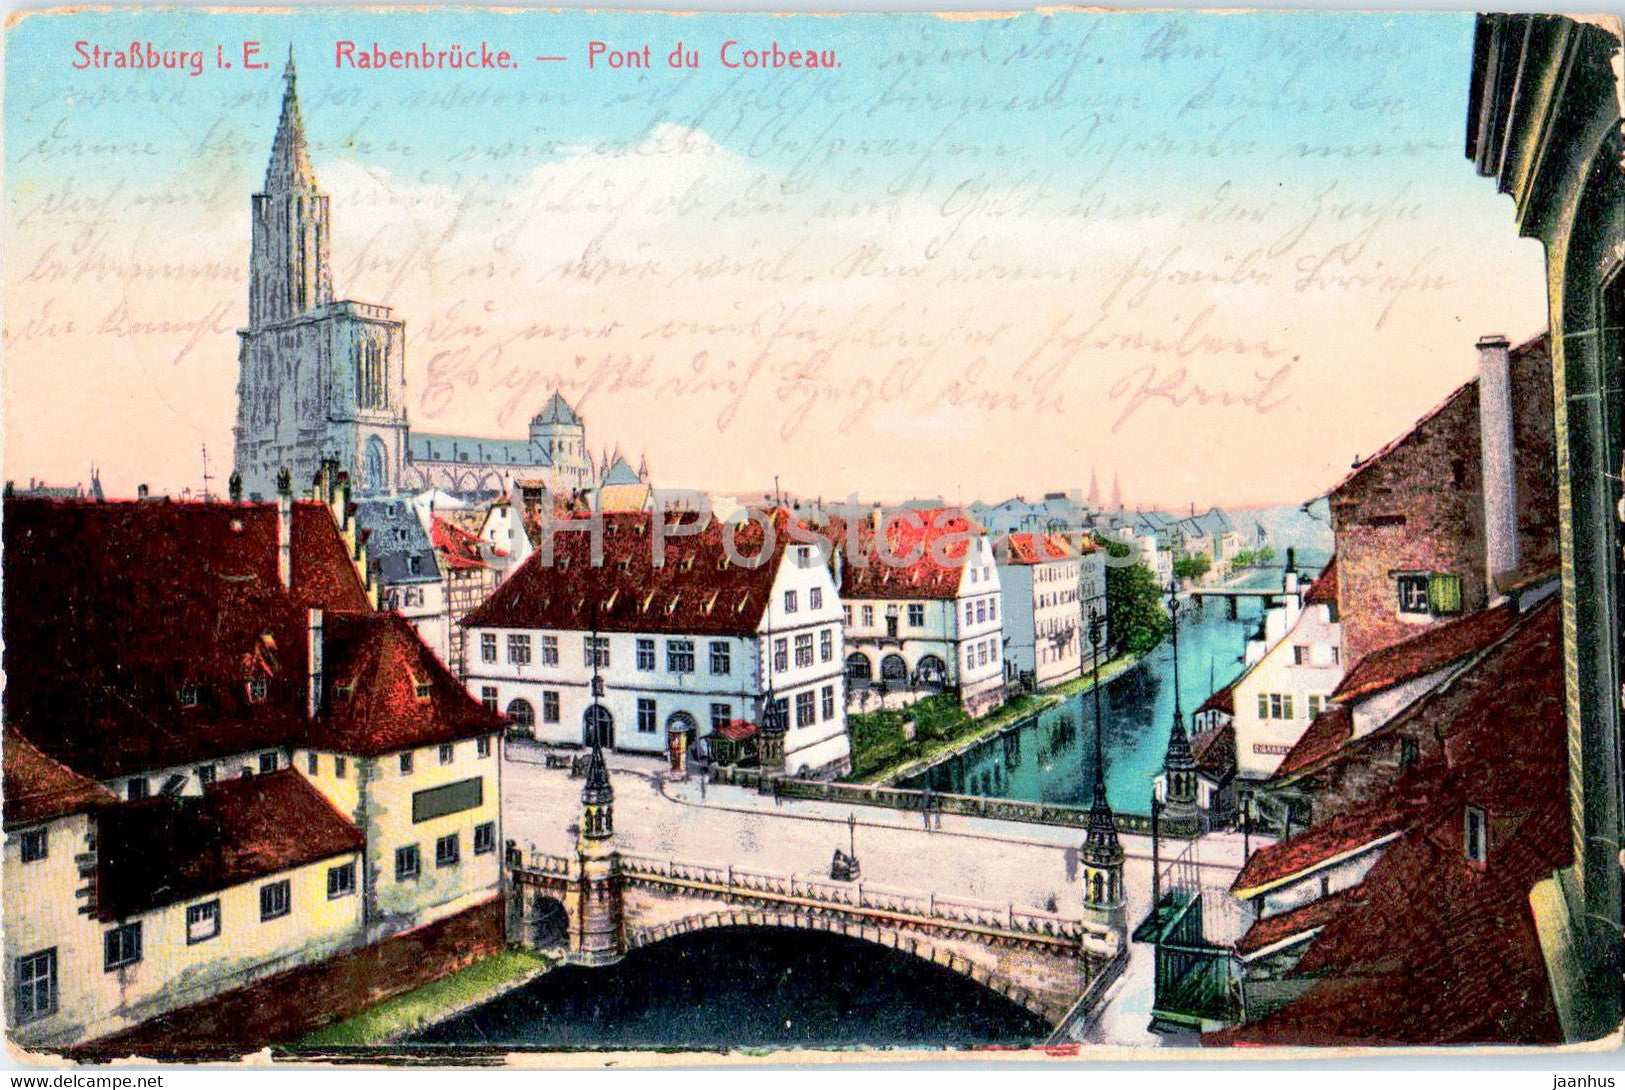 Strassburg i E - Strasbourg - Rabenbrucke - Pont du Corbeau - bridge - old postcard - 1914 - France - used - JH Postcards